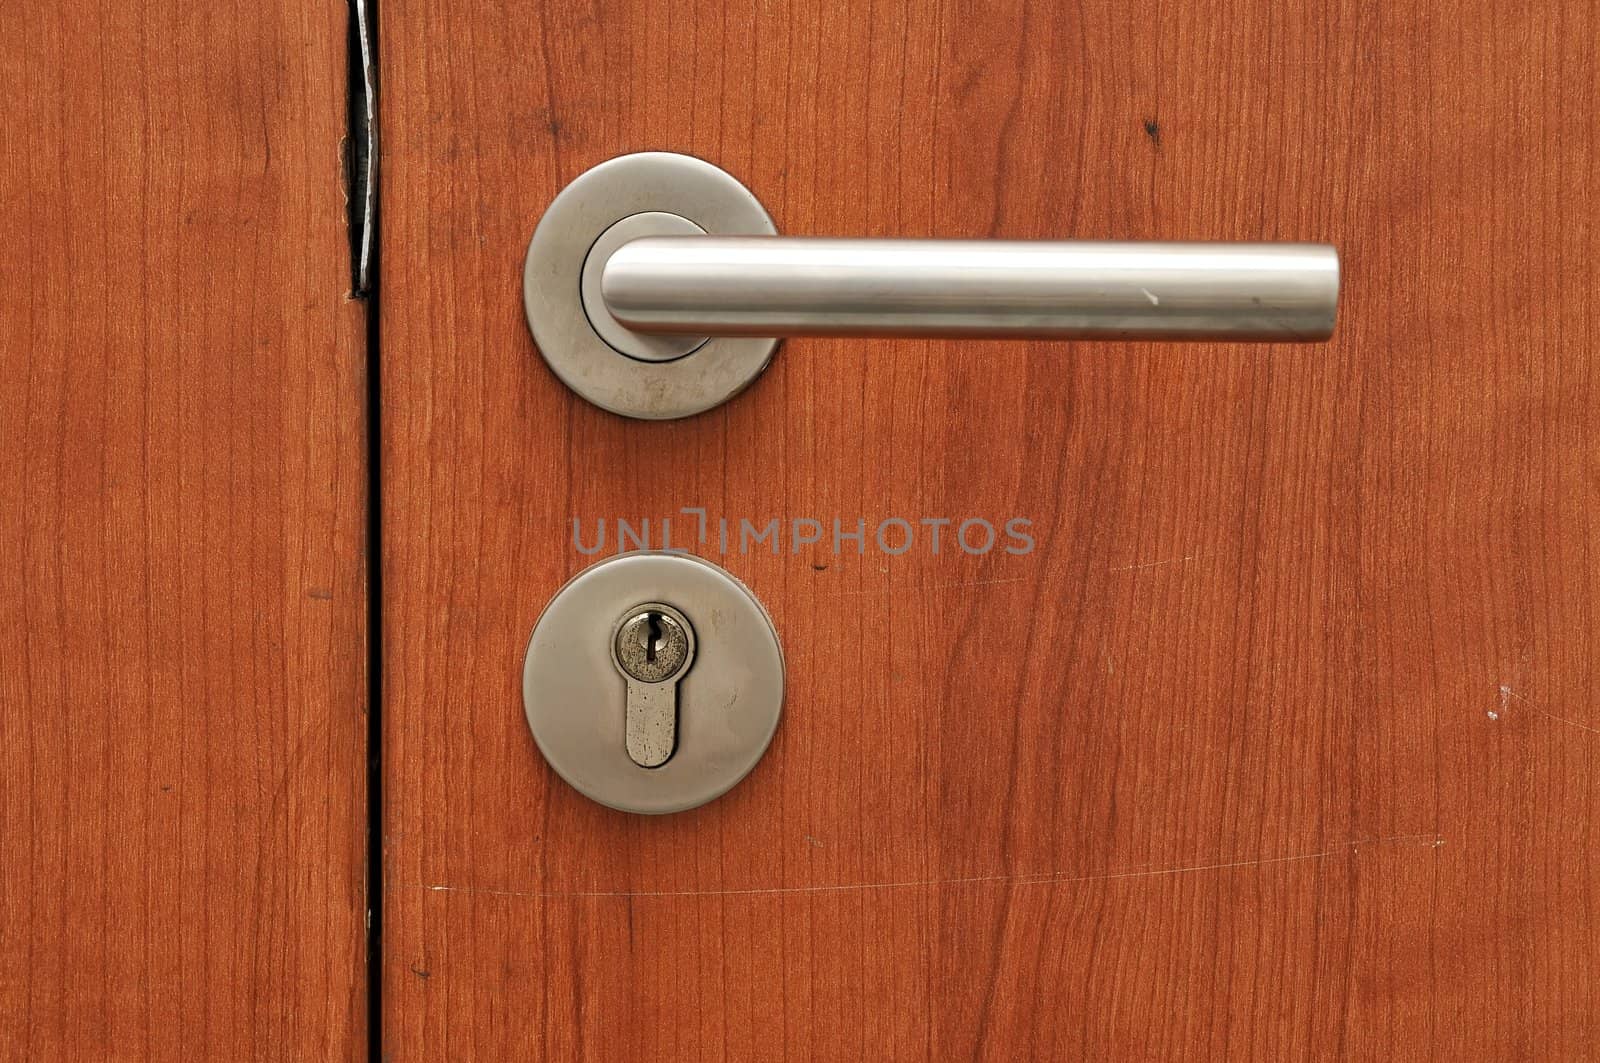 Door handle by phanlop88